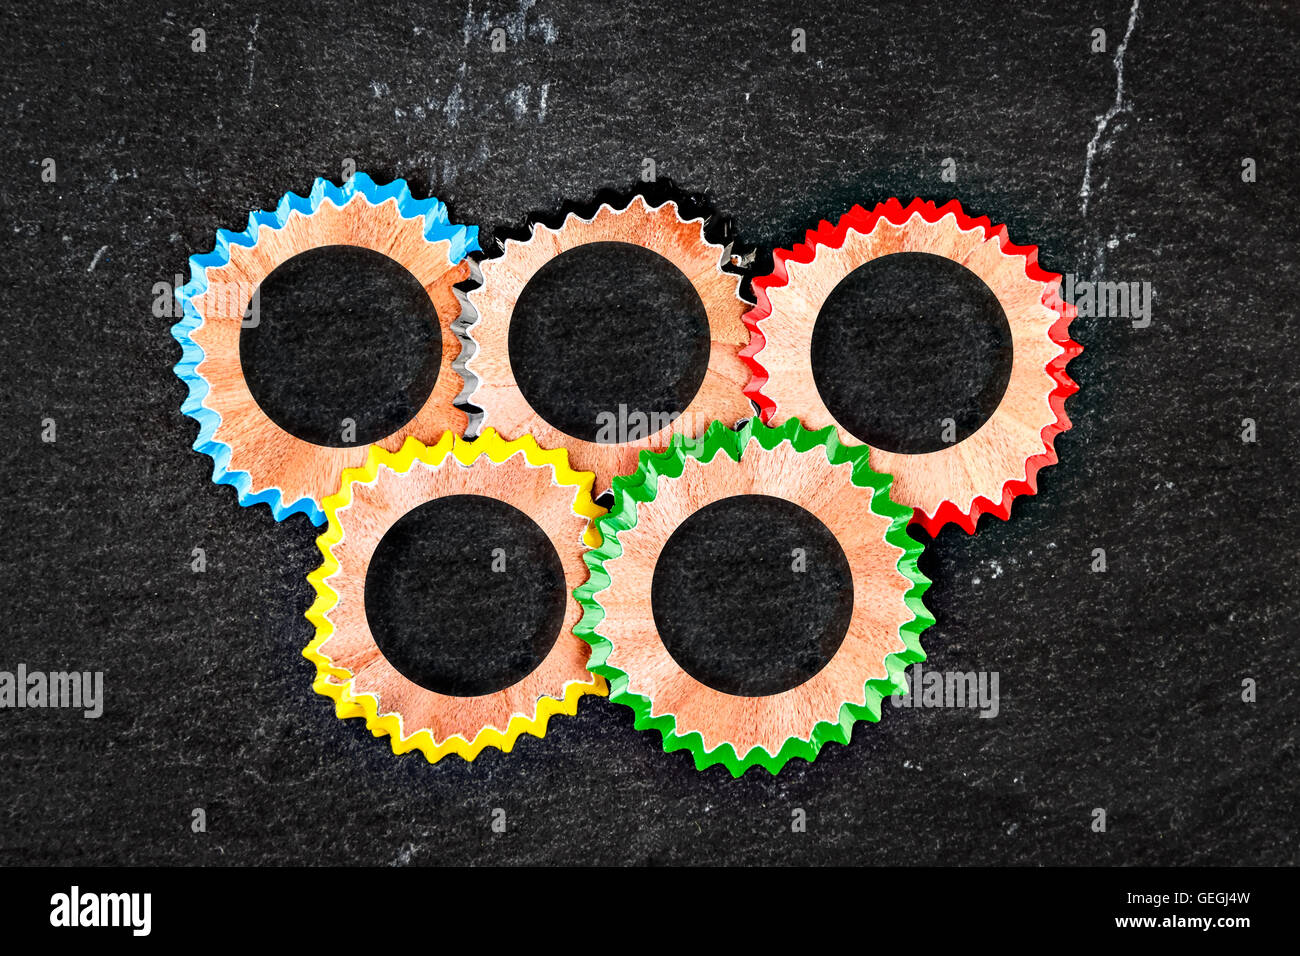 Symbole des anneaux olympiques faits avec des copeaux de crayon de couleur sur une pierre de l'ardoise. Image horizontale. Banque D'Images